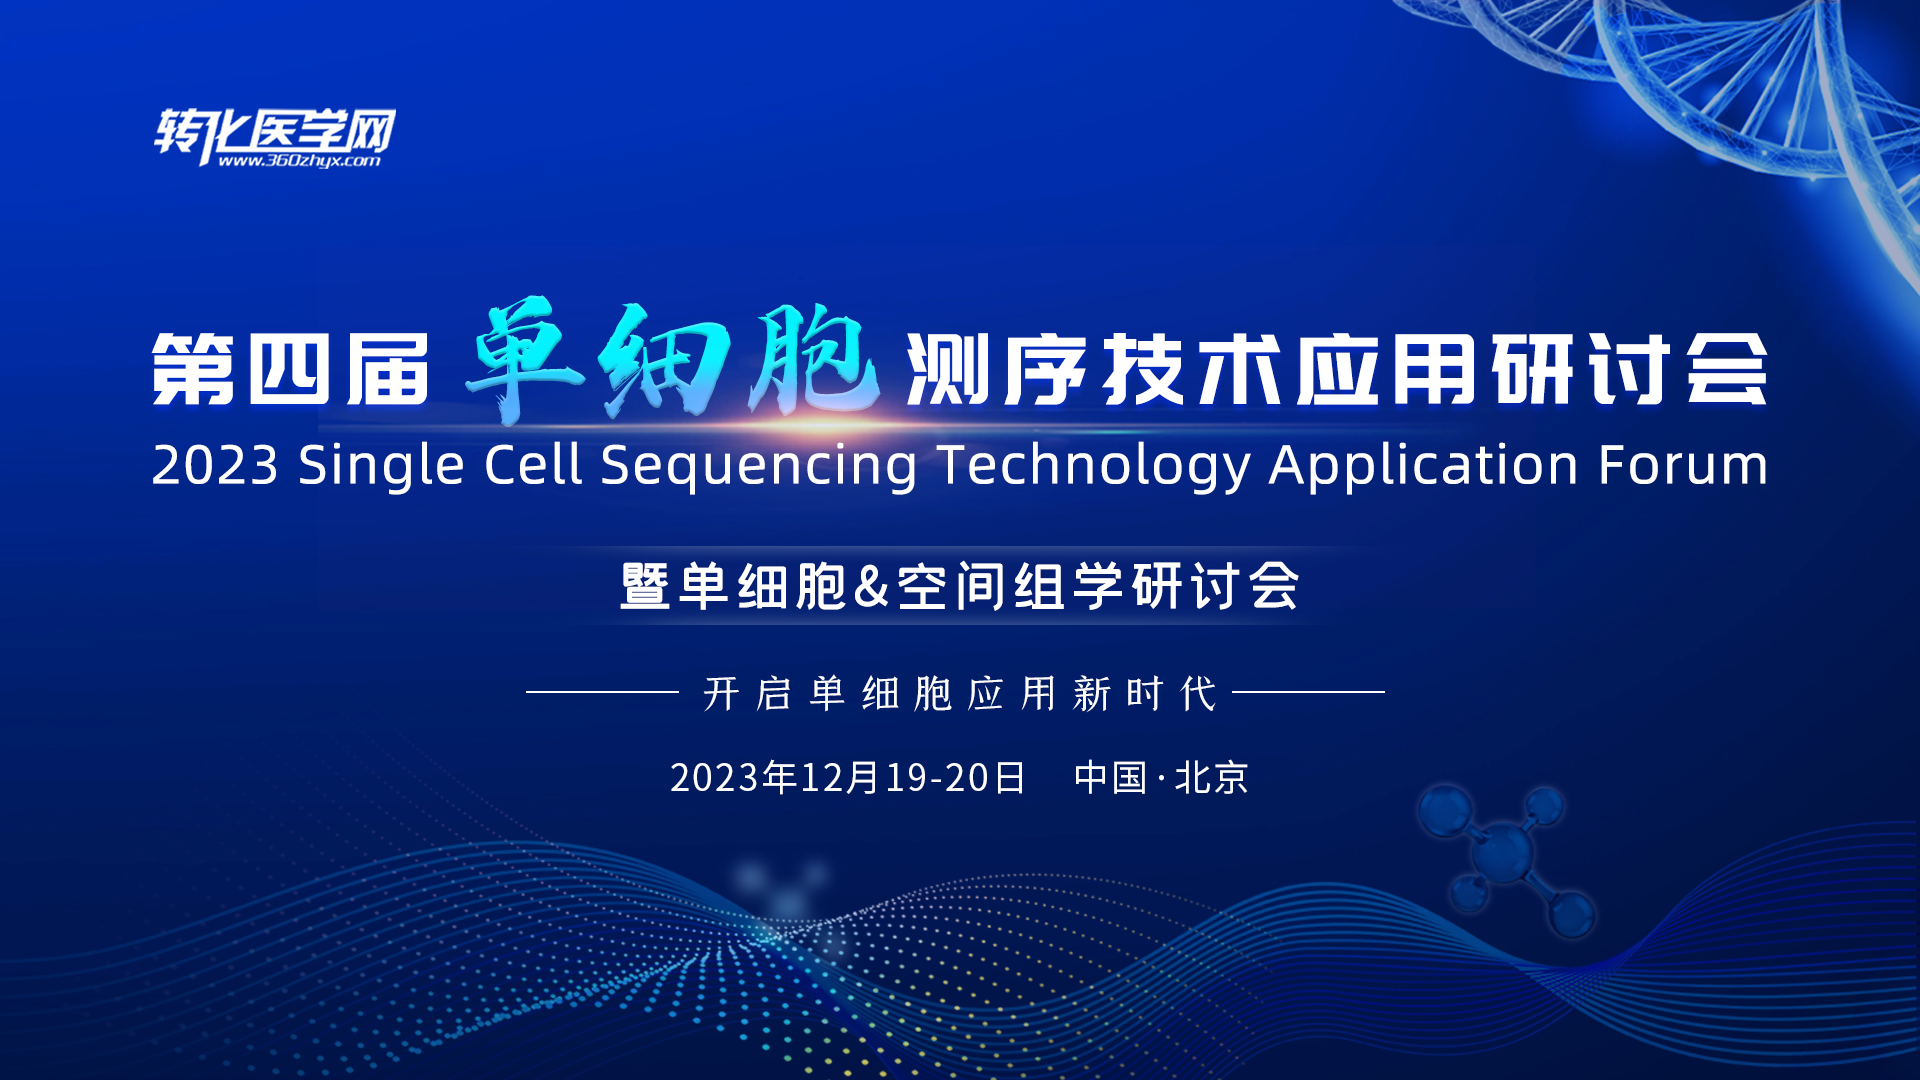 【邀请函】第四届单细胞测序技术应用研讨会暨单细胞&空间组学研讨会欢迎您的参与！